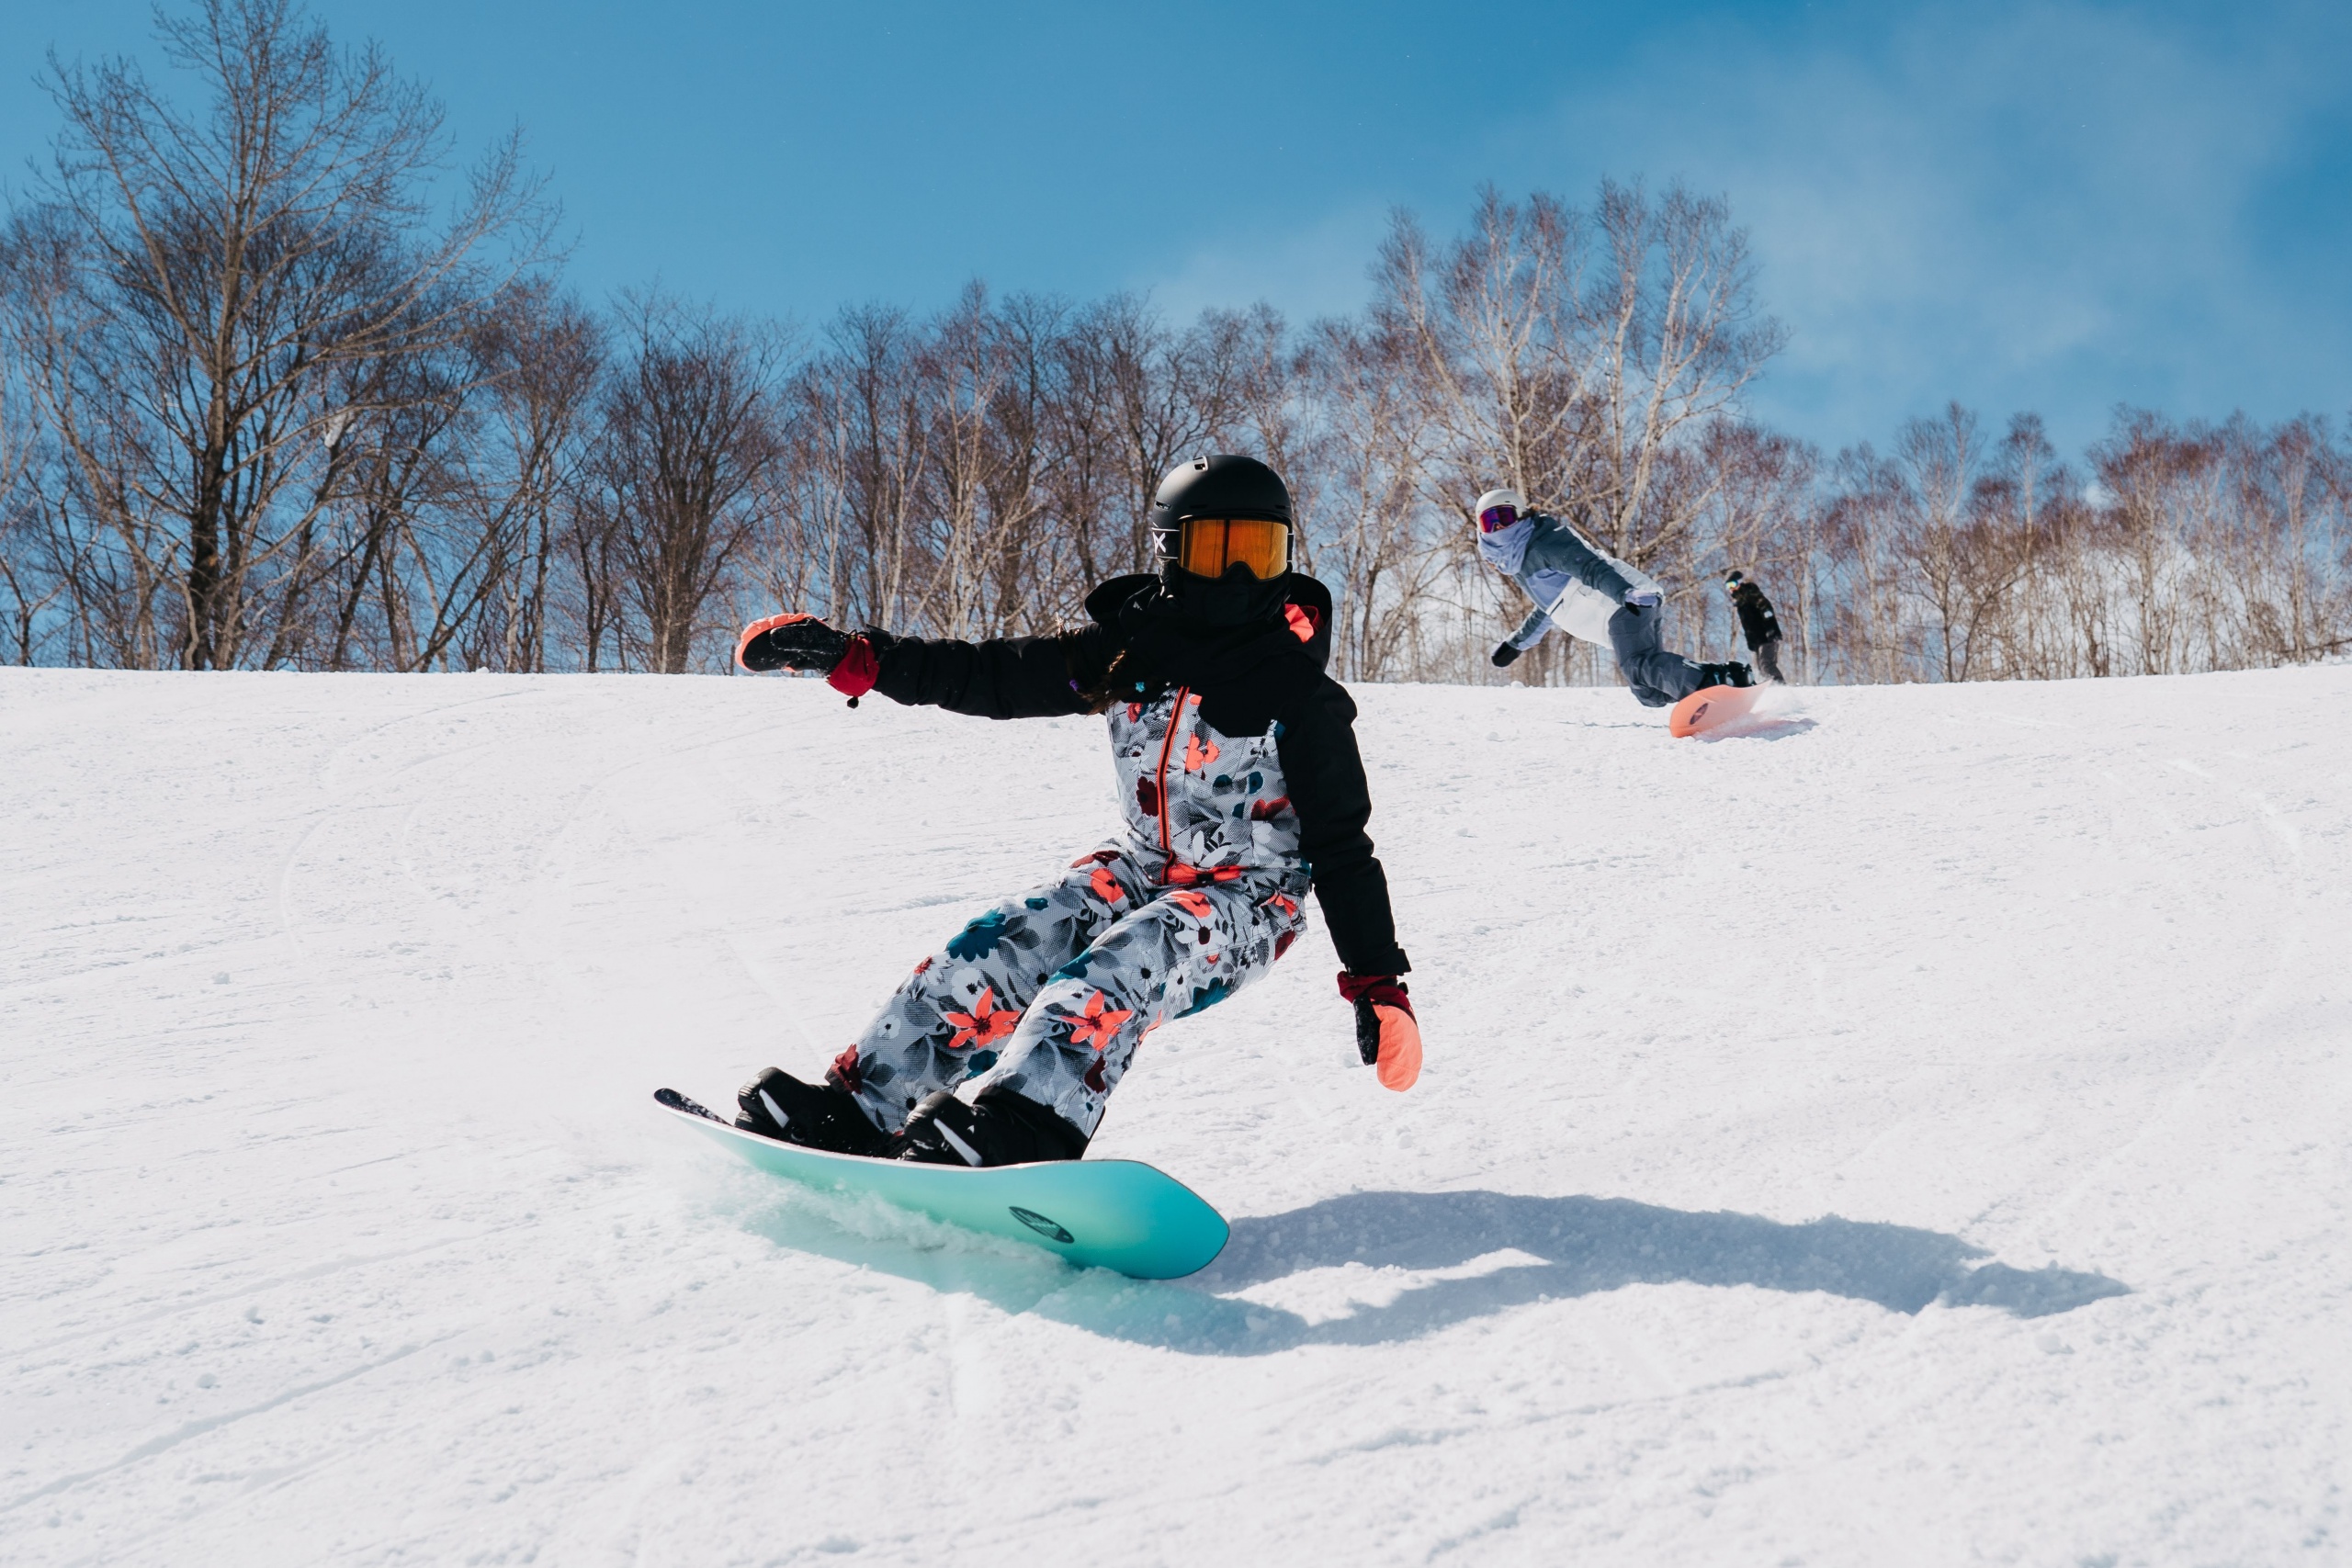 Burton’s Snowboard Essentials for Family Day Fun